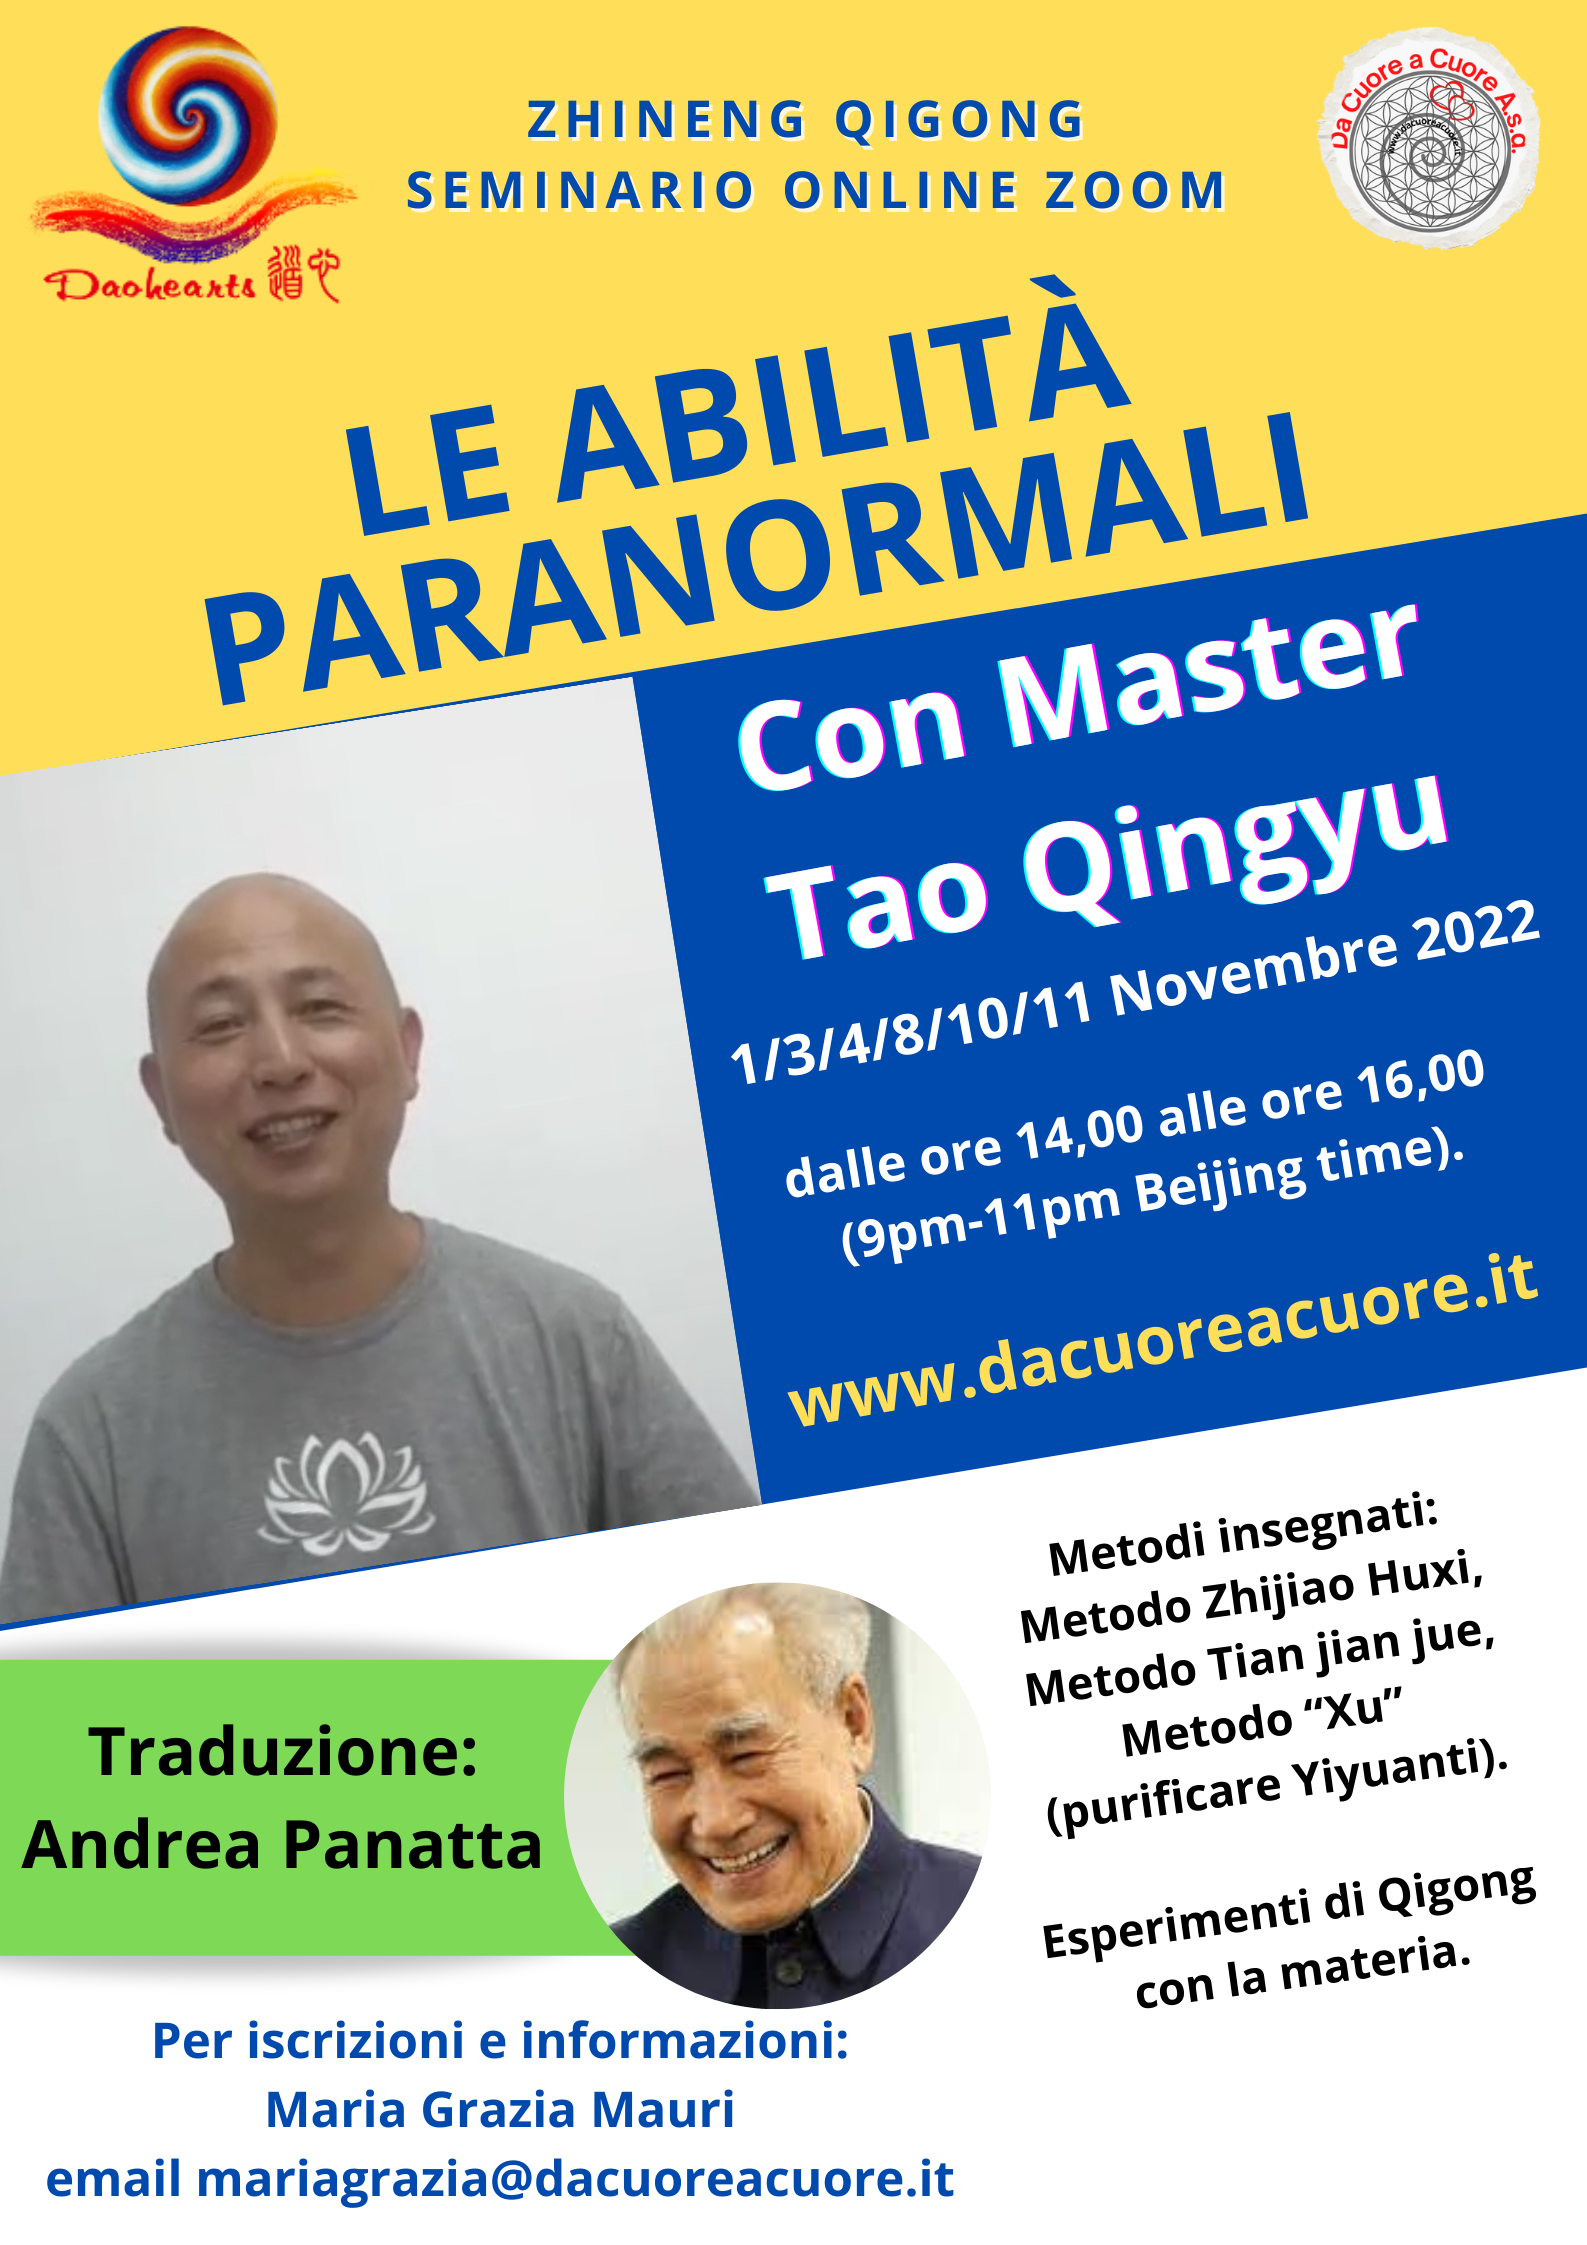 "Le Abilità Paranormali" Seminario online Zoom con Master Tao Qingyu